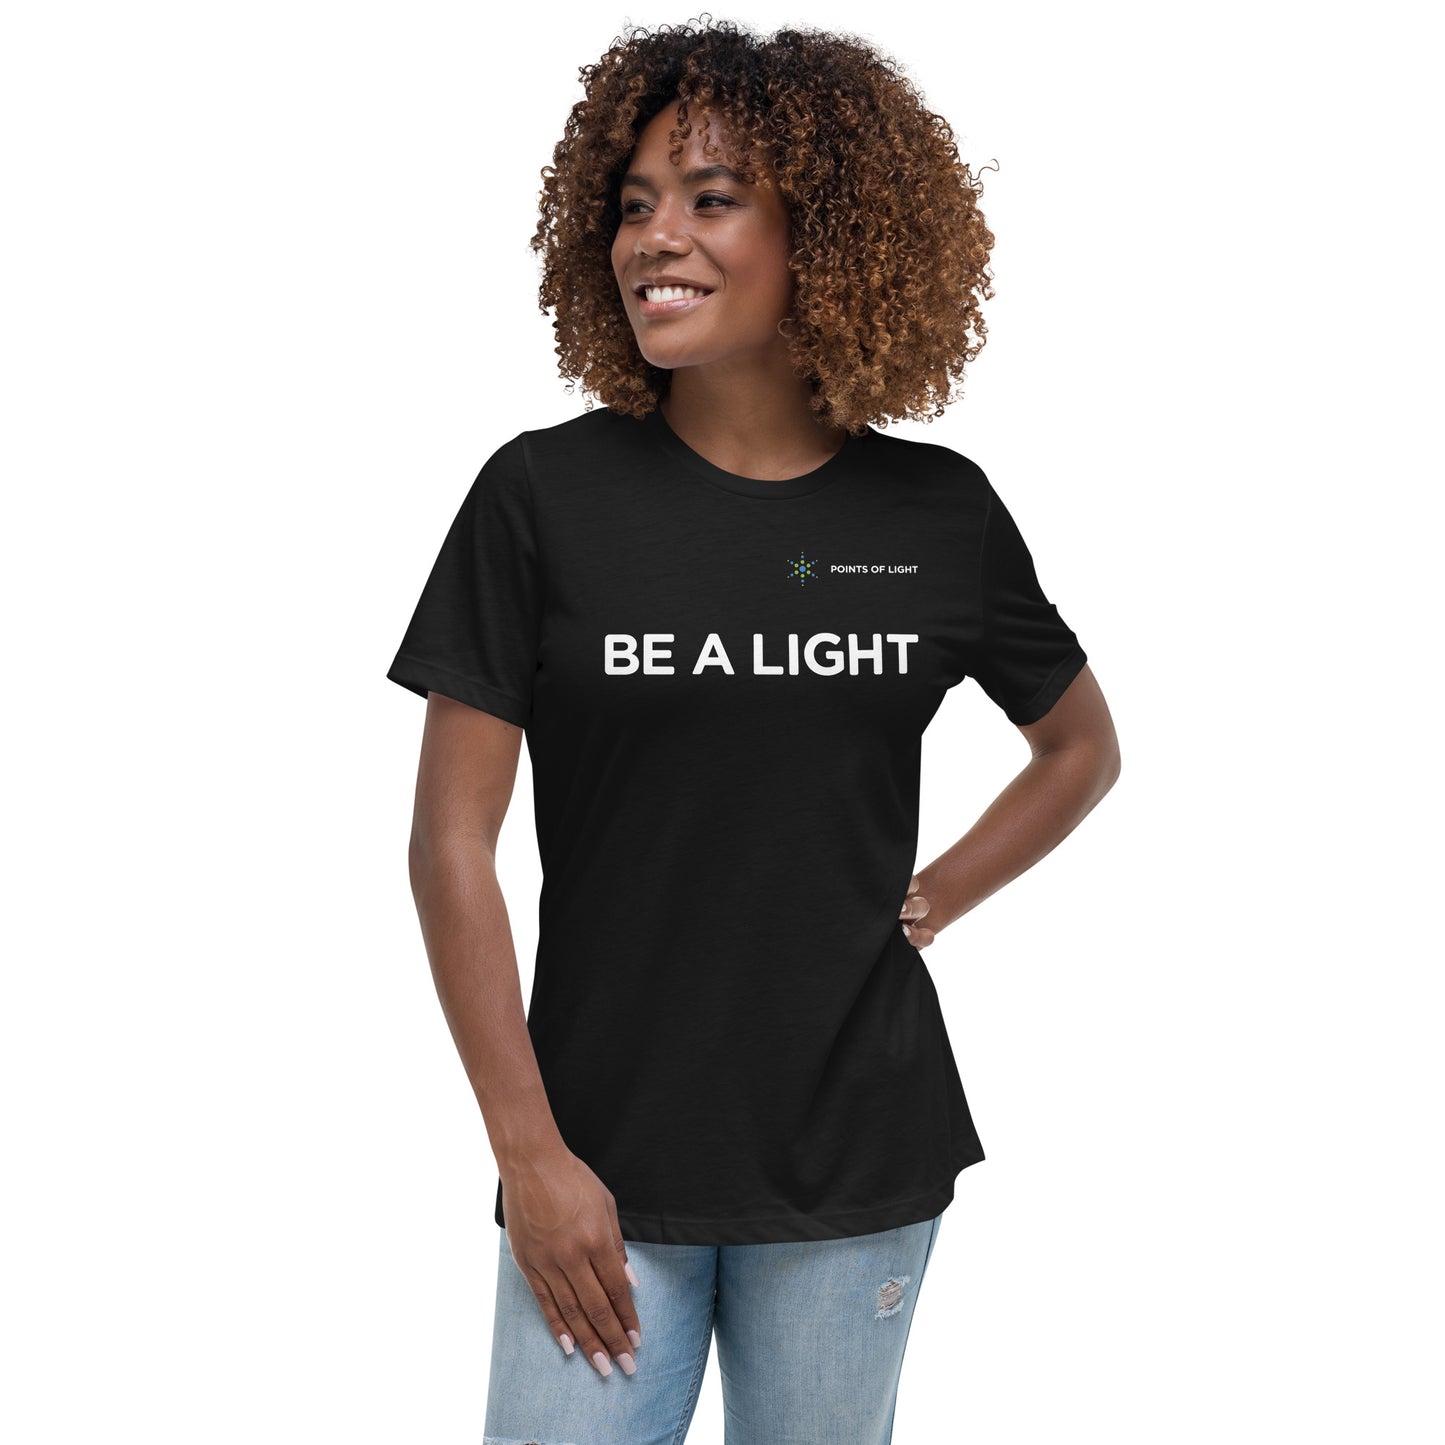 "Be A Light" Women's Relaxed T-Shirt